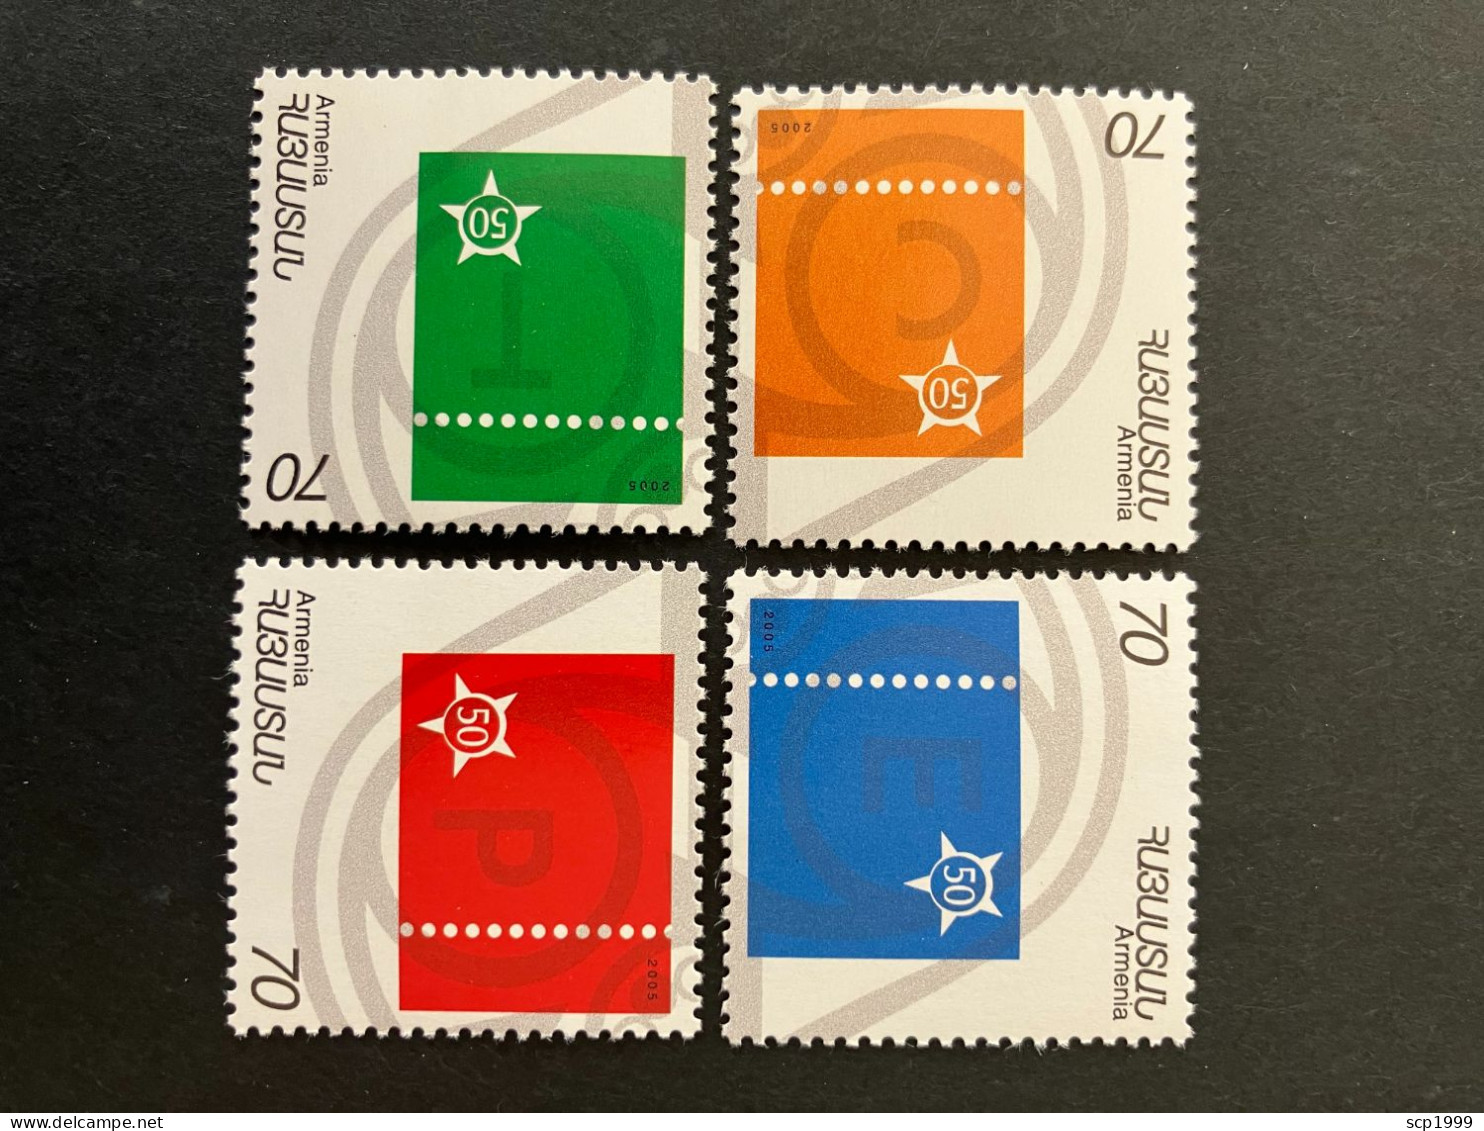 Armenia 2006 - Europa 50 Years Stamps Set MNH - Armenia